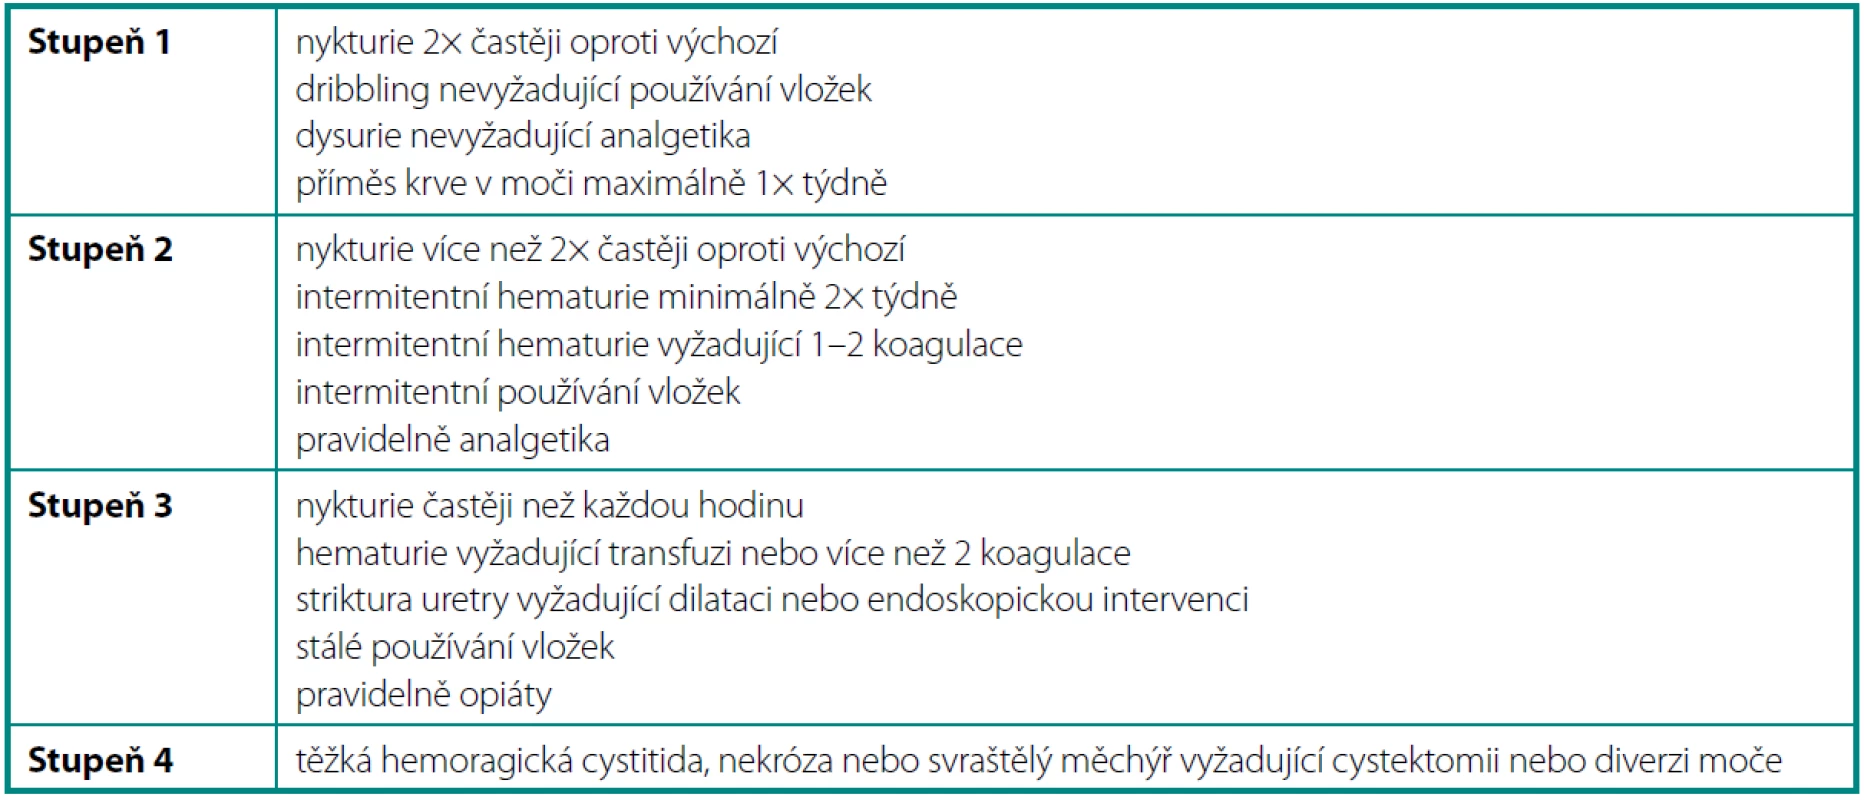 RTOG/FC-LENT kritéria pro chronickou urinární toxicitu
Table 2. RTOG/FC-LENT late urinary toxicity criteria